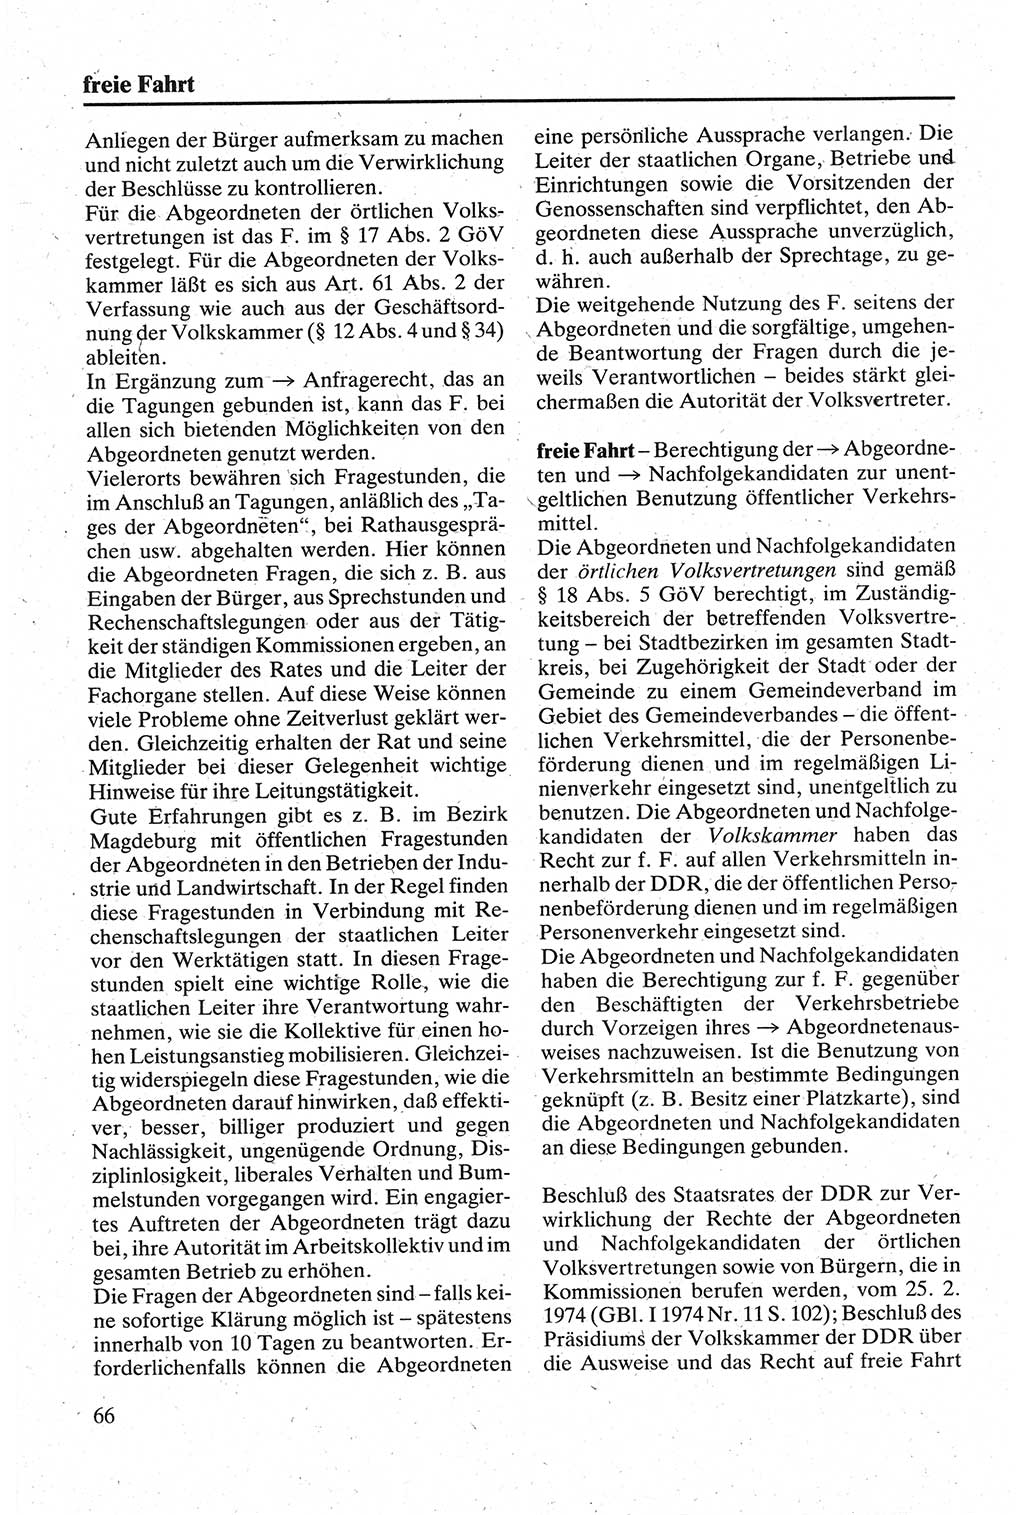 Handbuch für den Abgeordneten [Deutsche Demokratische Republik (DDR)] 1984, Seite 66 (Hb. Abg. DDR 1984, S. 66)